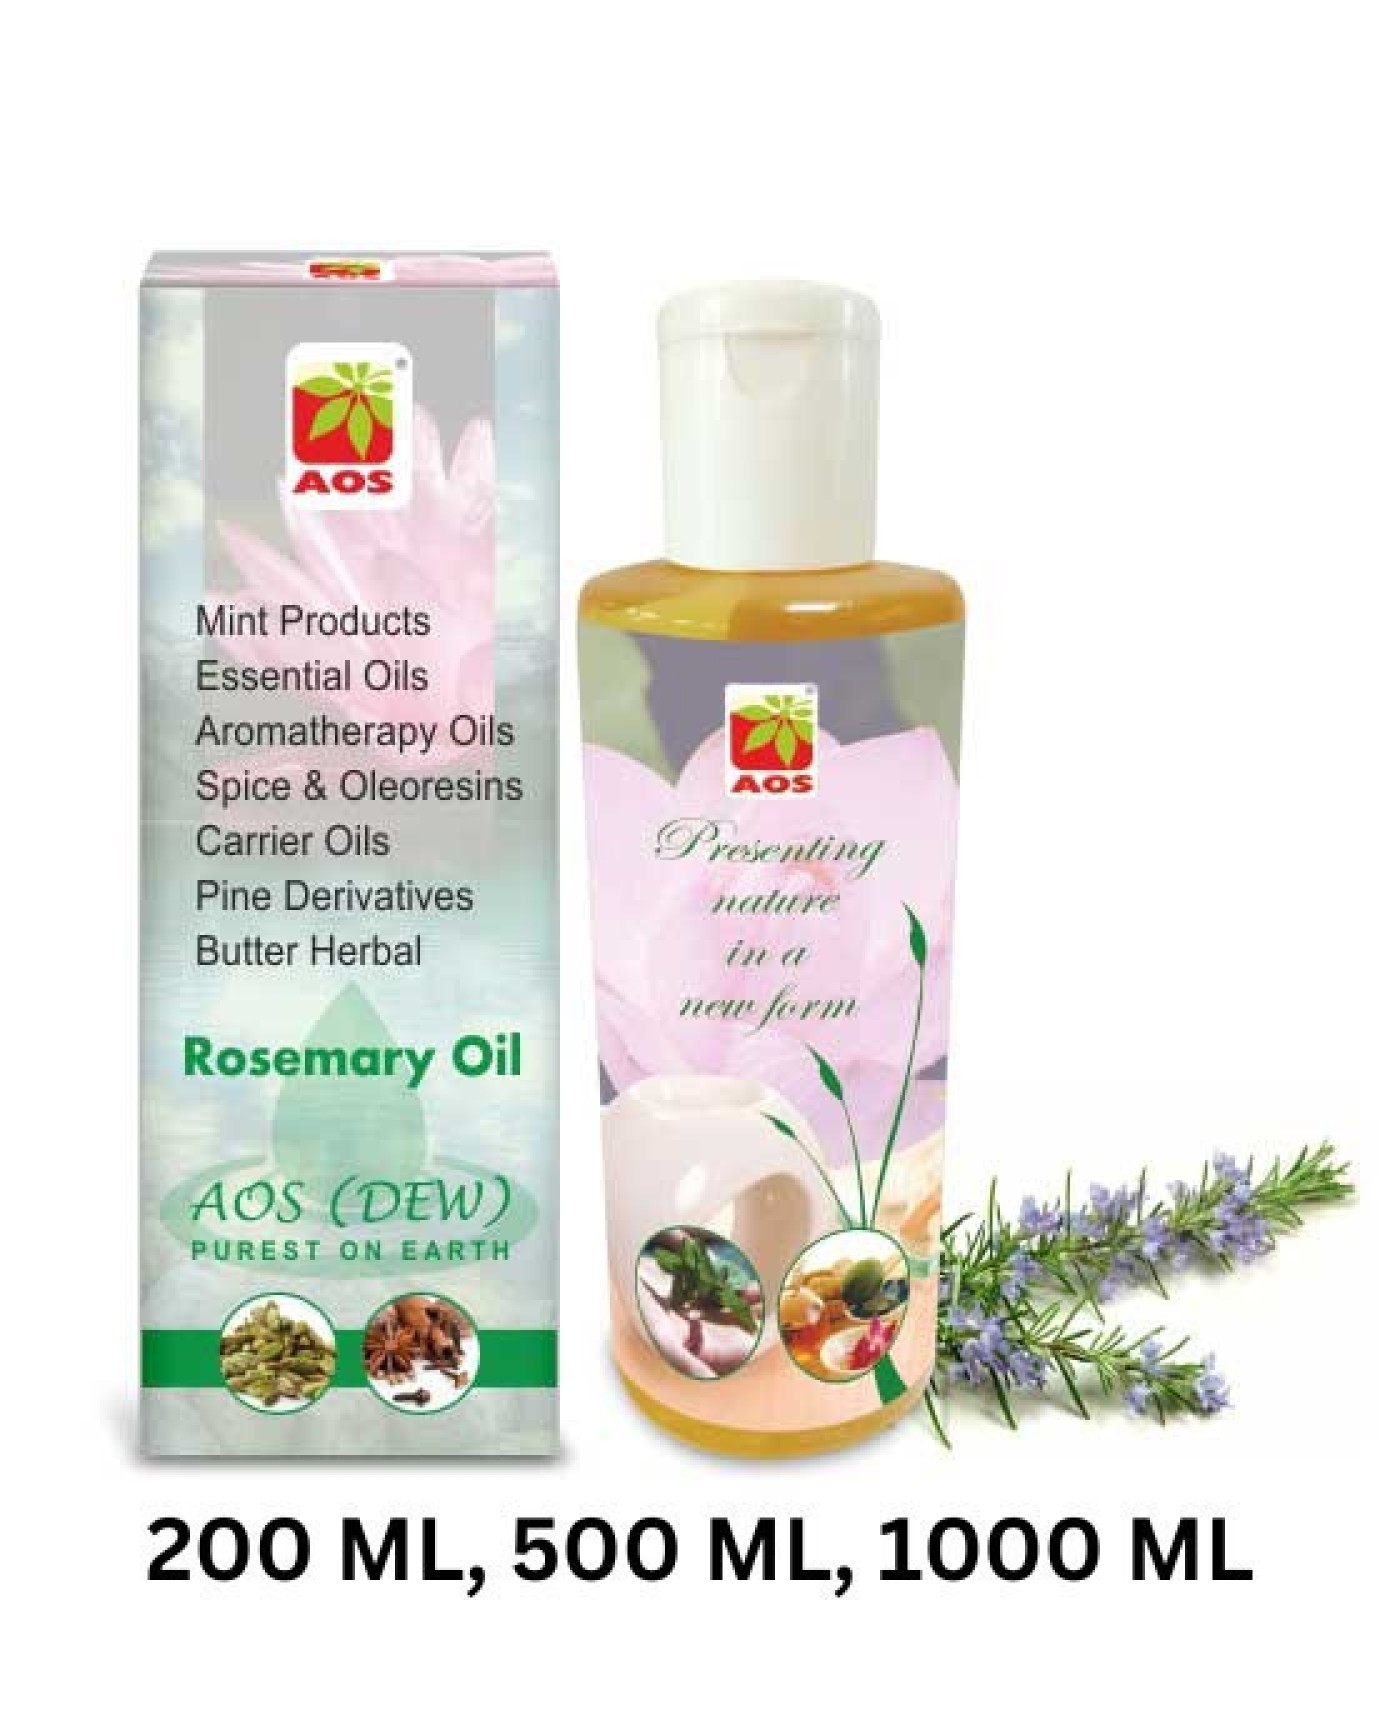 Buy Rosemary Oil Online